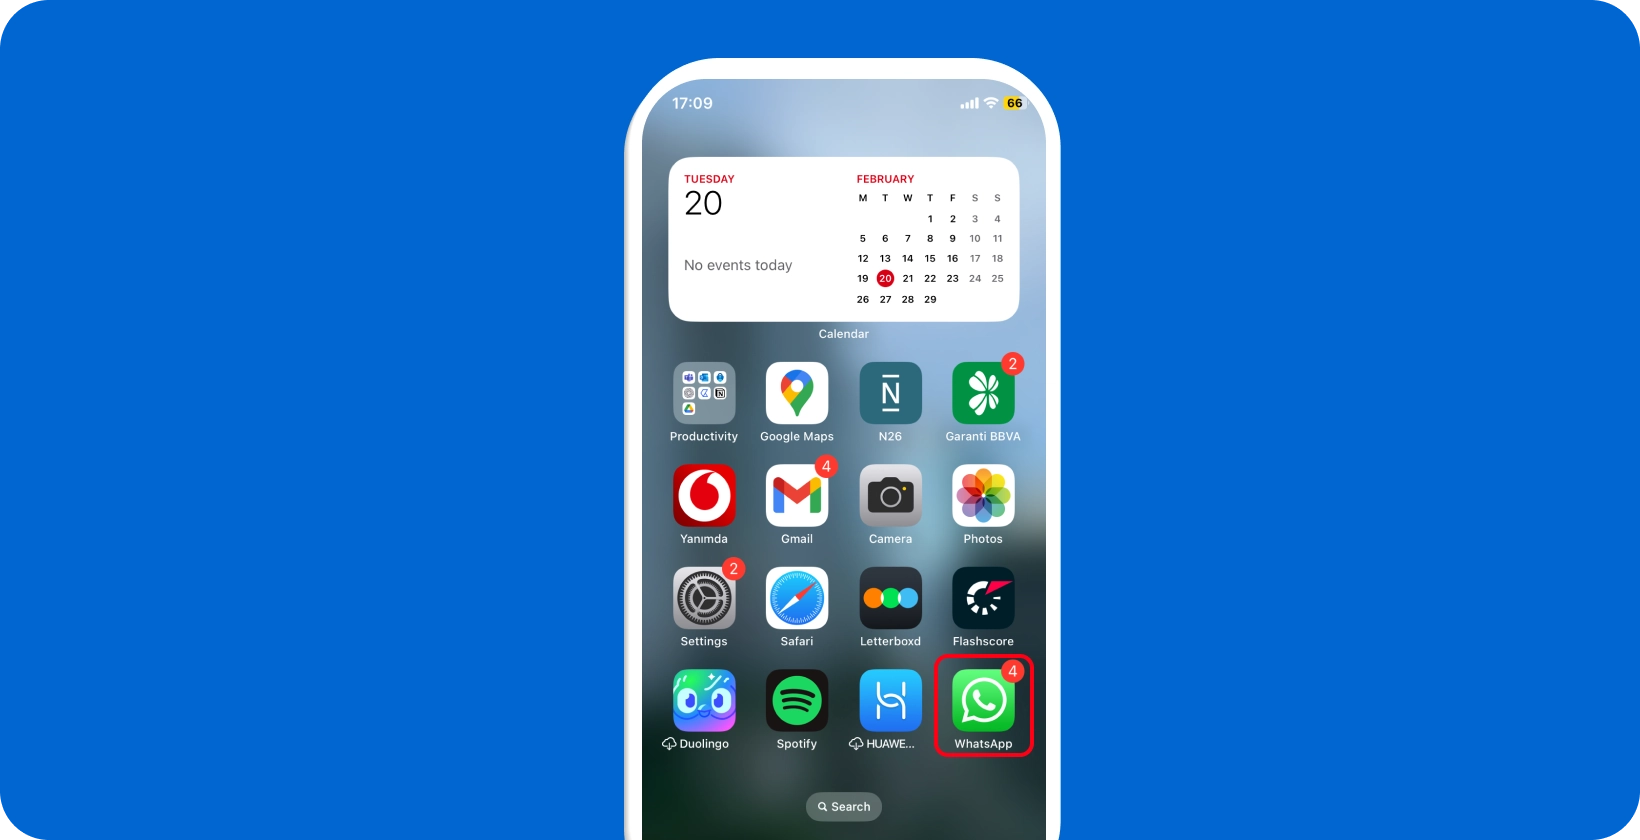 알림과 함께 WhatsApp 아이콘을 표시하는 스마트폰 화면은 음성 받아쓰기에 대한 앱의 준비 상태를 강조합니다.